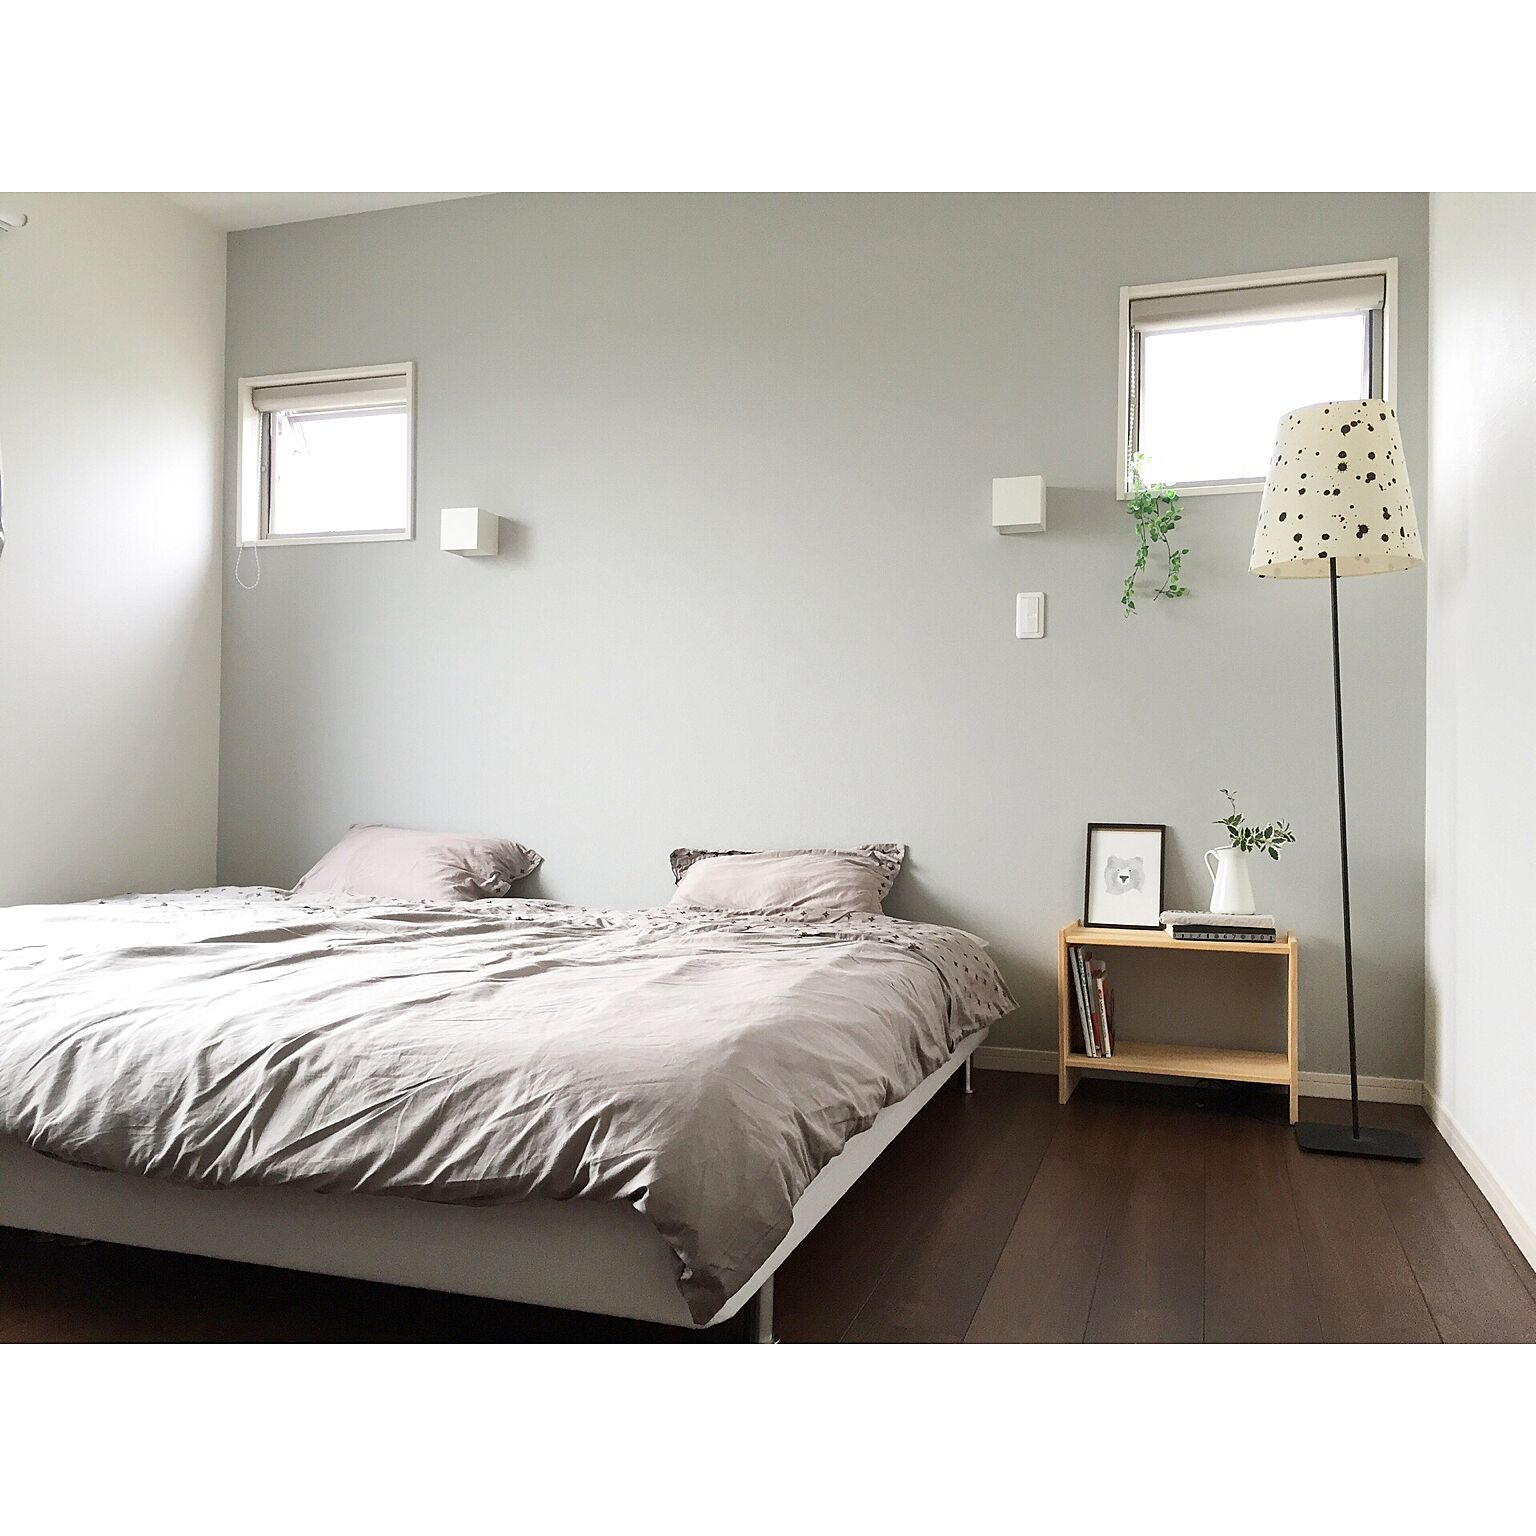 ものを置かない美しさがここにある 憧れのミニマルな寝室 Roomclip Mag 暮らしとインテリアのwebマガジン